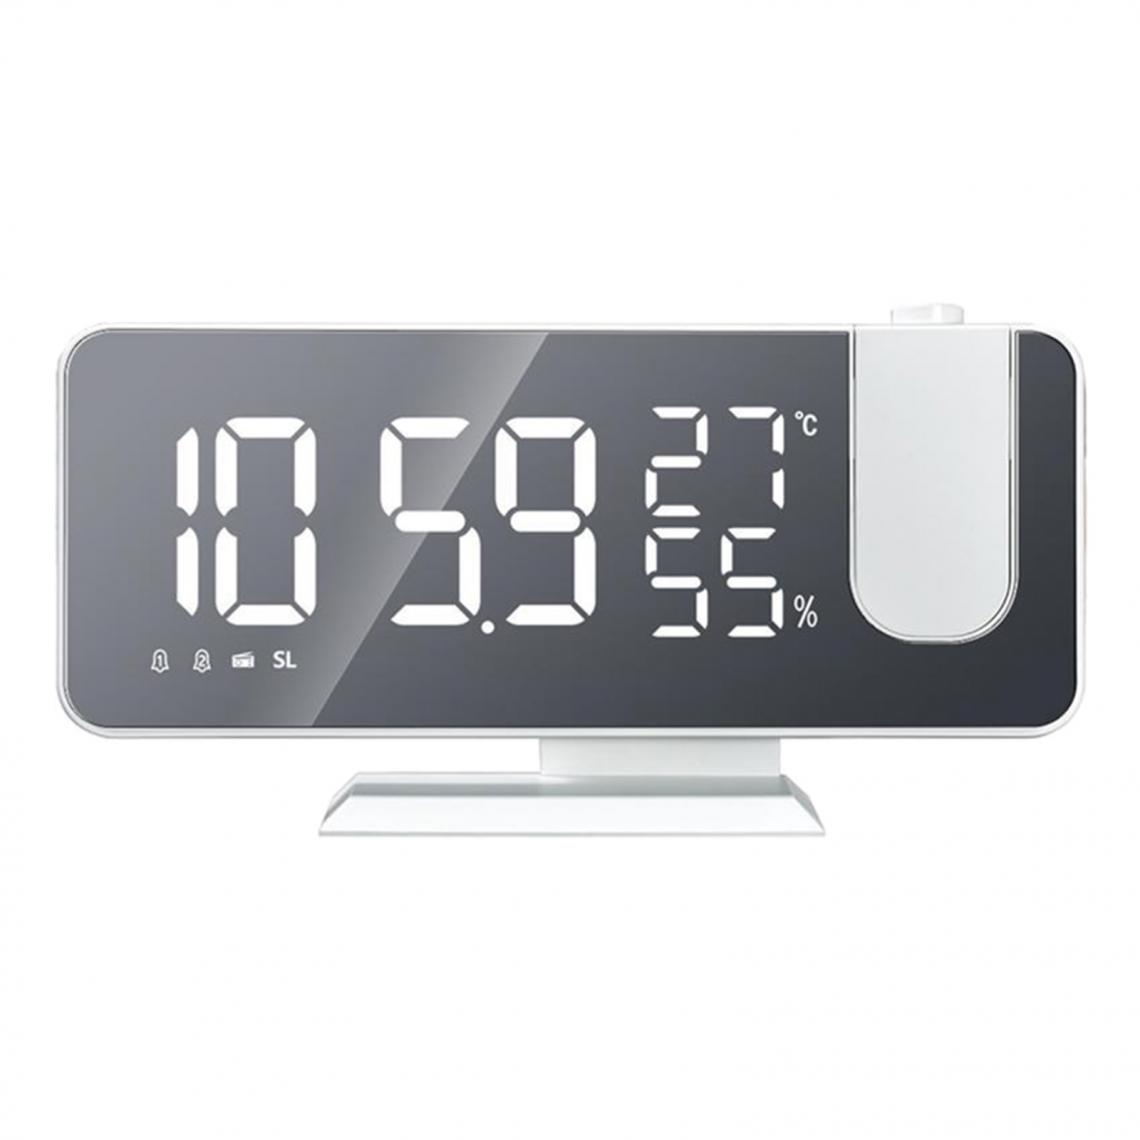 marque generique - Réveil De Bureau à LED Numérique Thermomètre Radio Snooze Changeant De Blanc - Horloges, pendules